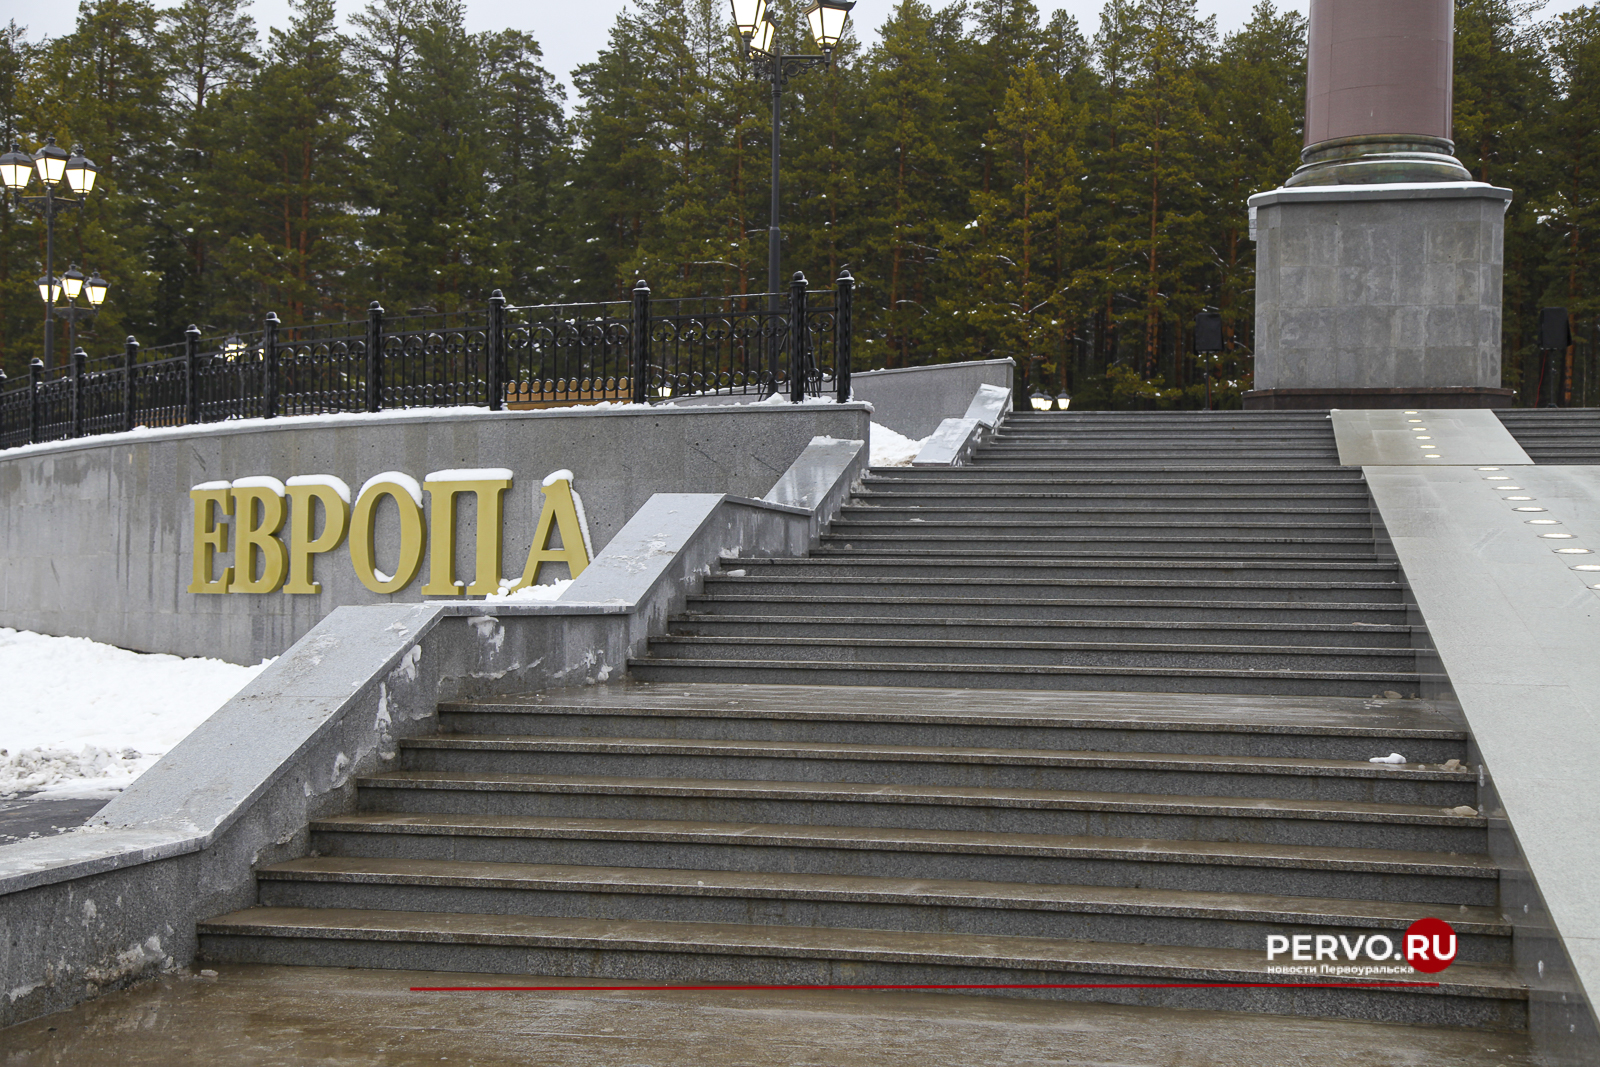 В Первоуральске после реконструкции открыли стелу «Европа - Азия»